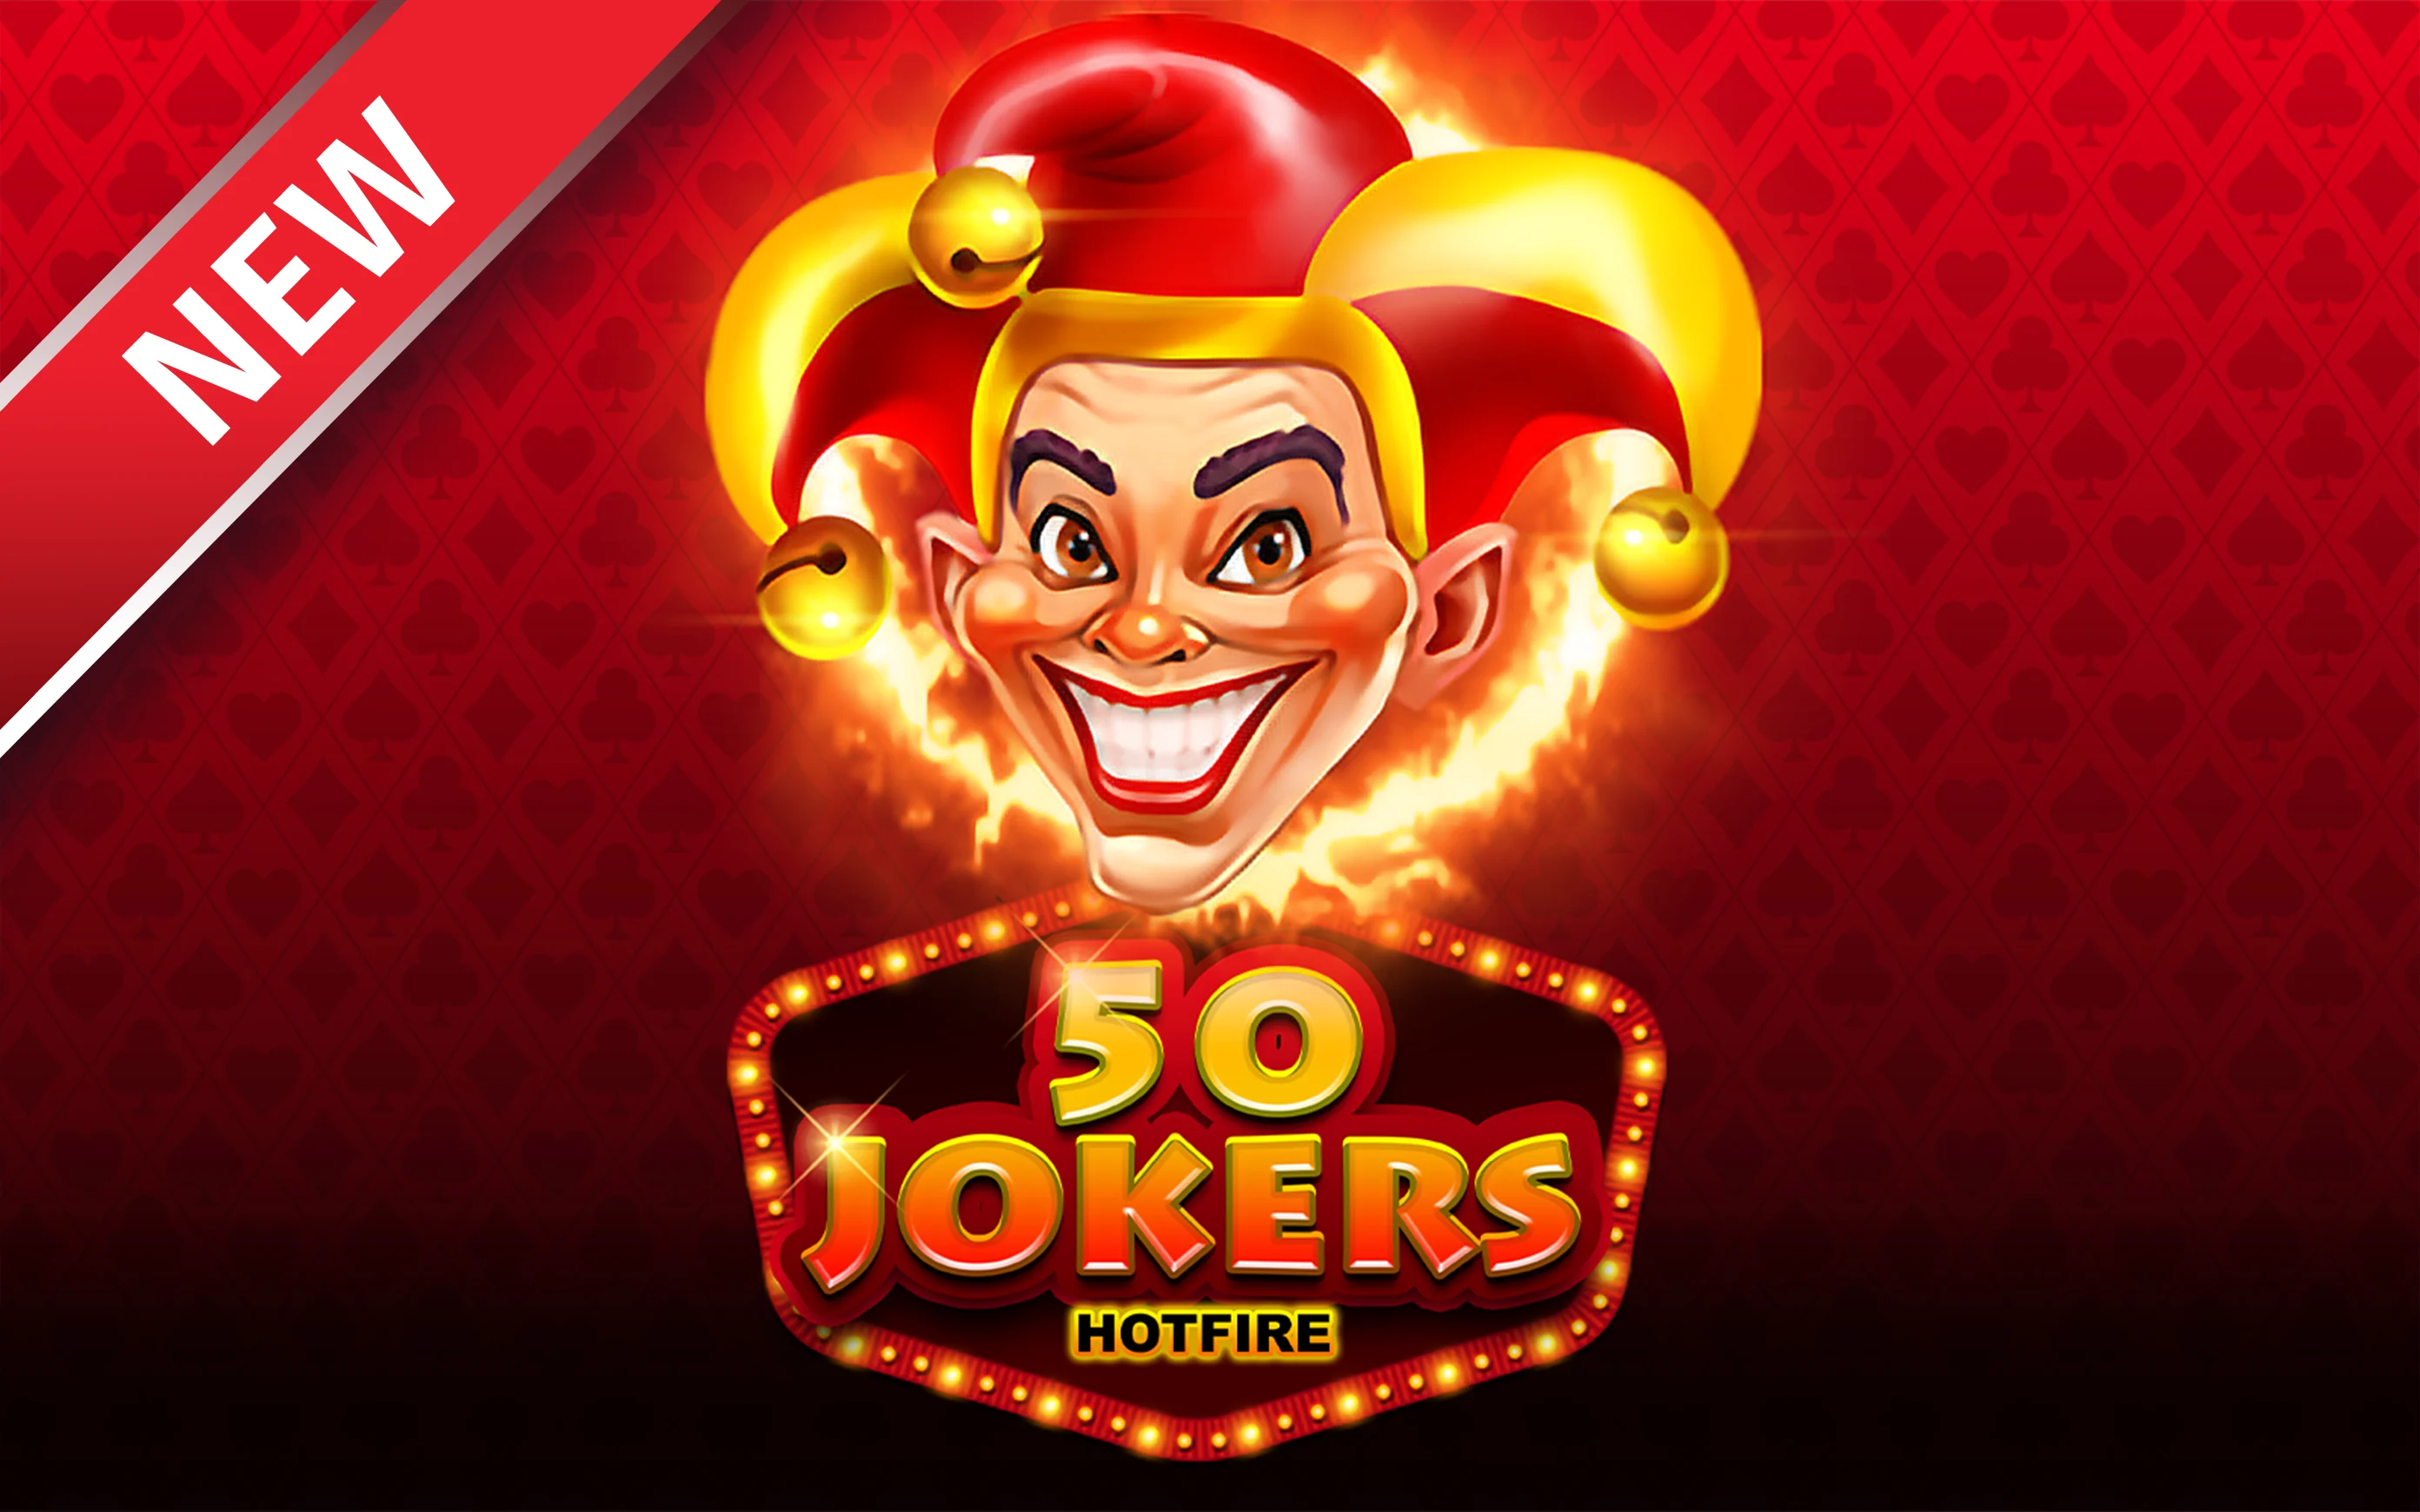 Play 50 Jokers HOTFIRE on Starcasino.be online casino